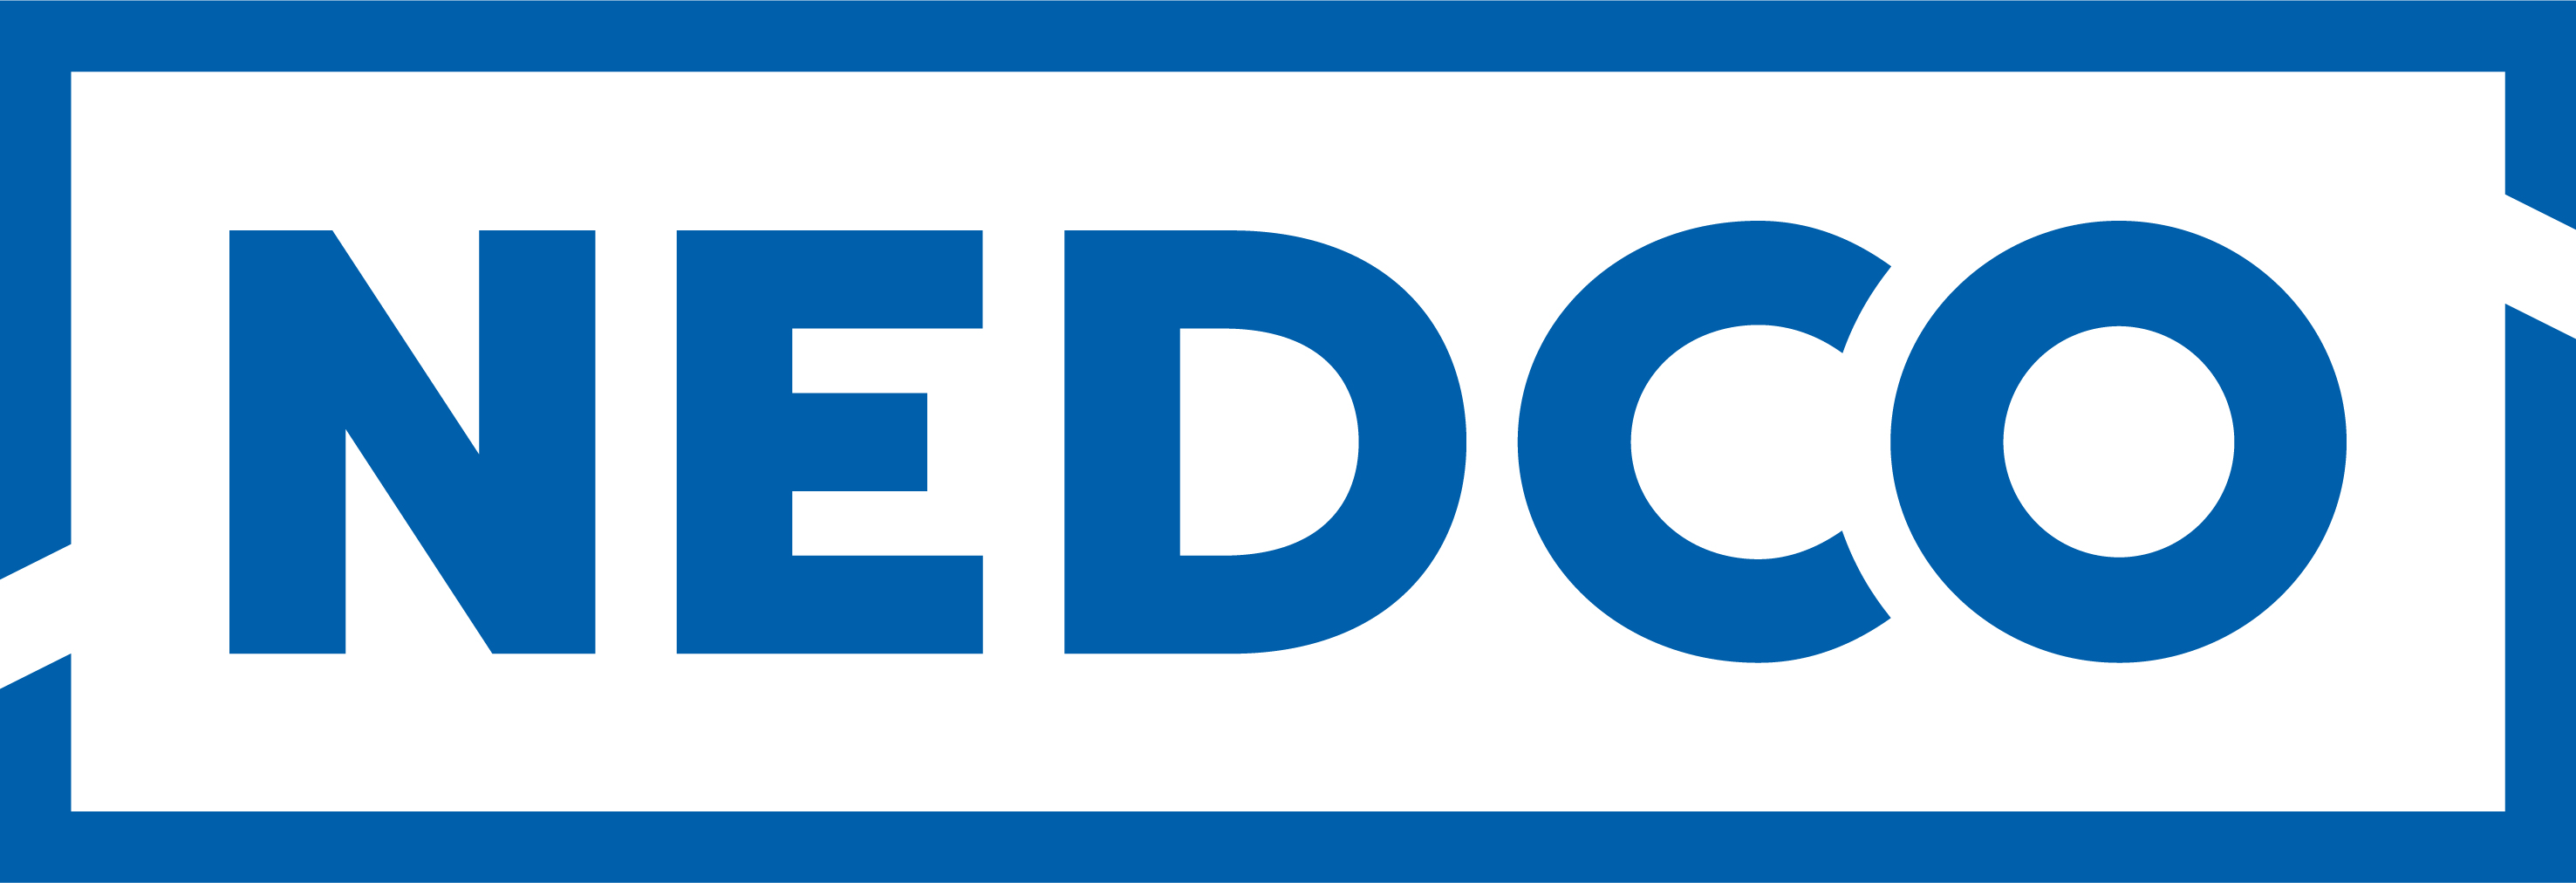 NEDCO logo.jpg